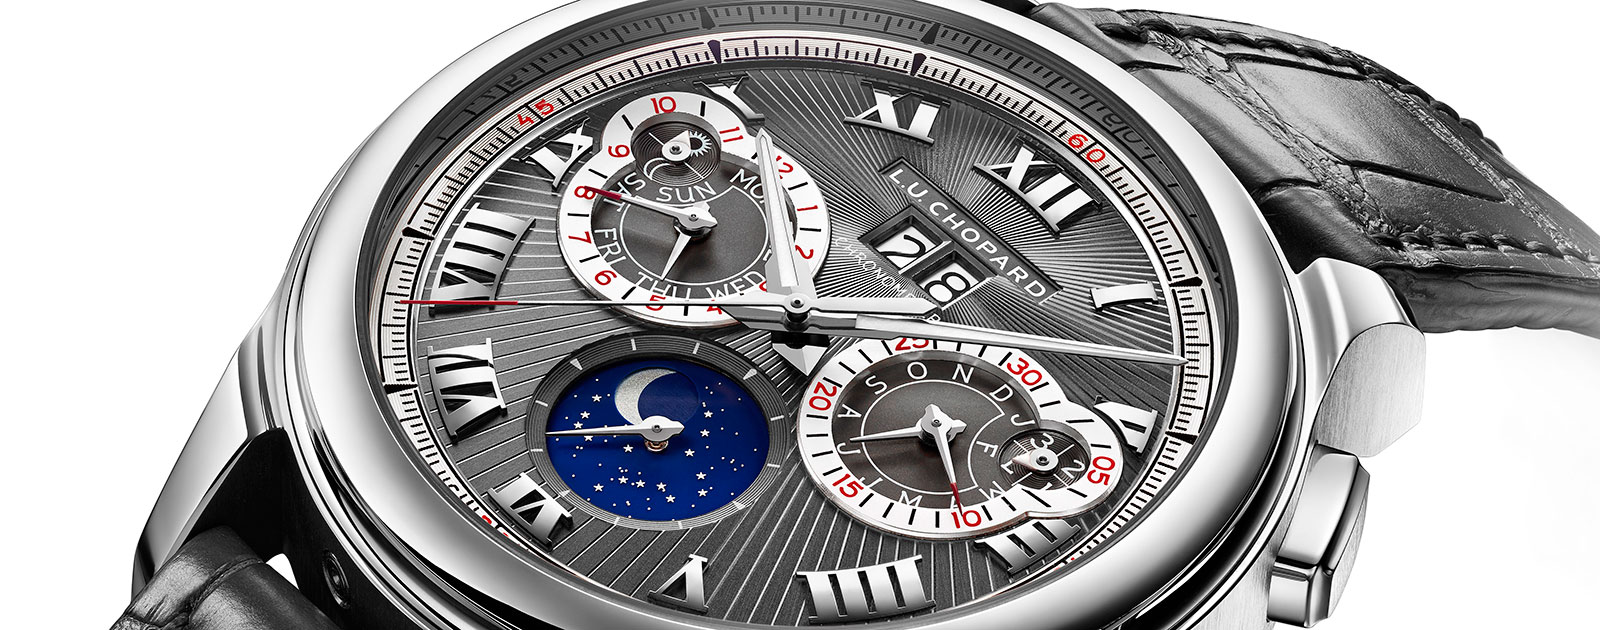 Baselworld 2016: Chopard L.U.C Perpetual Calendar Chronograph Watch